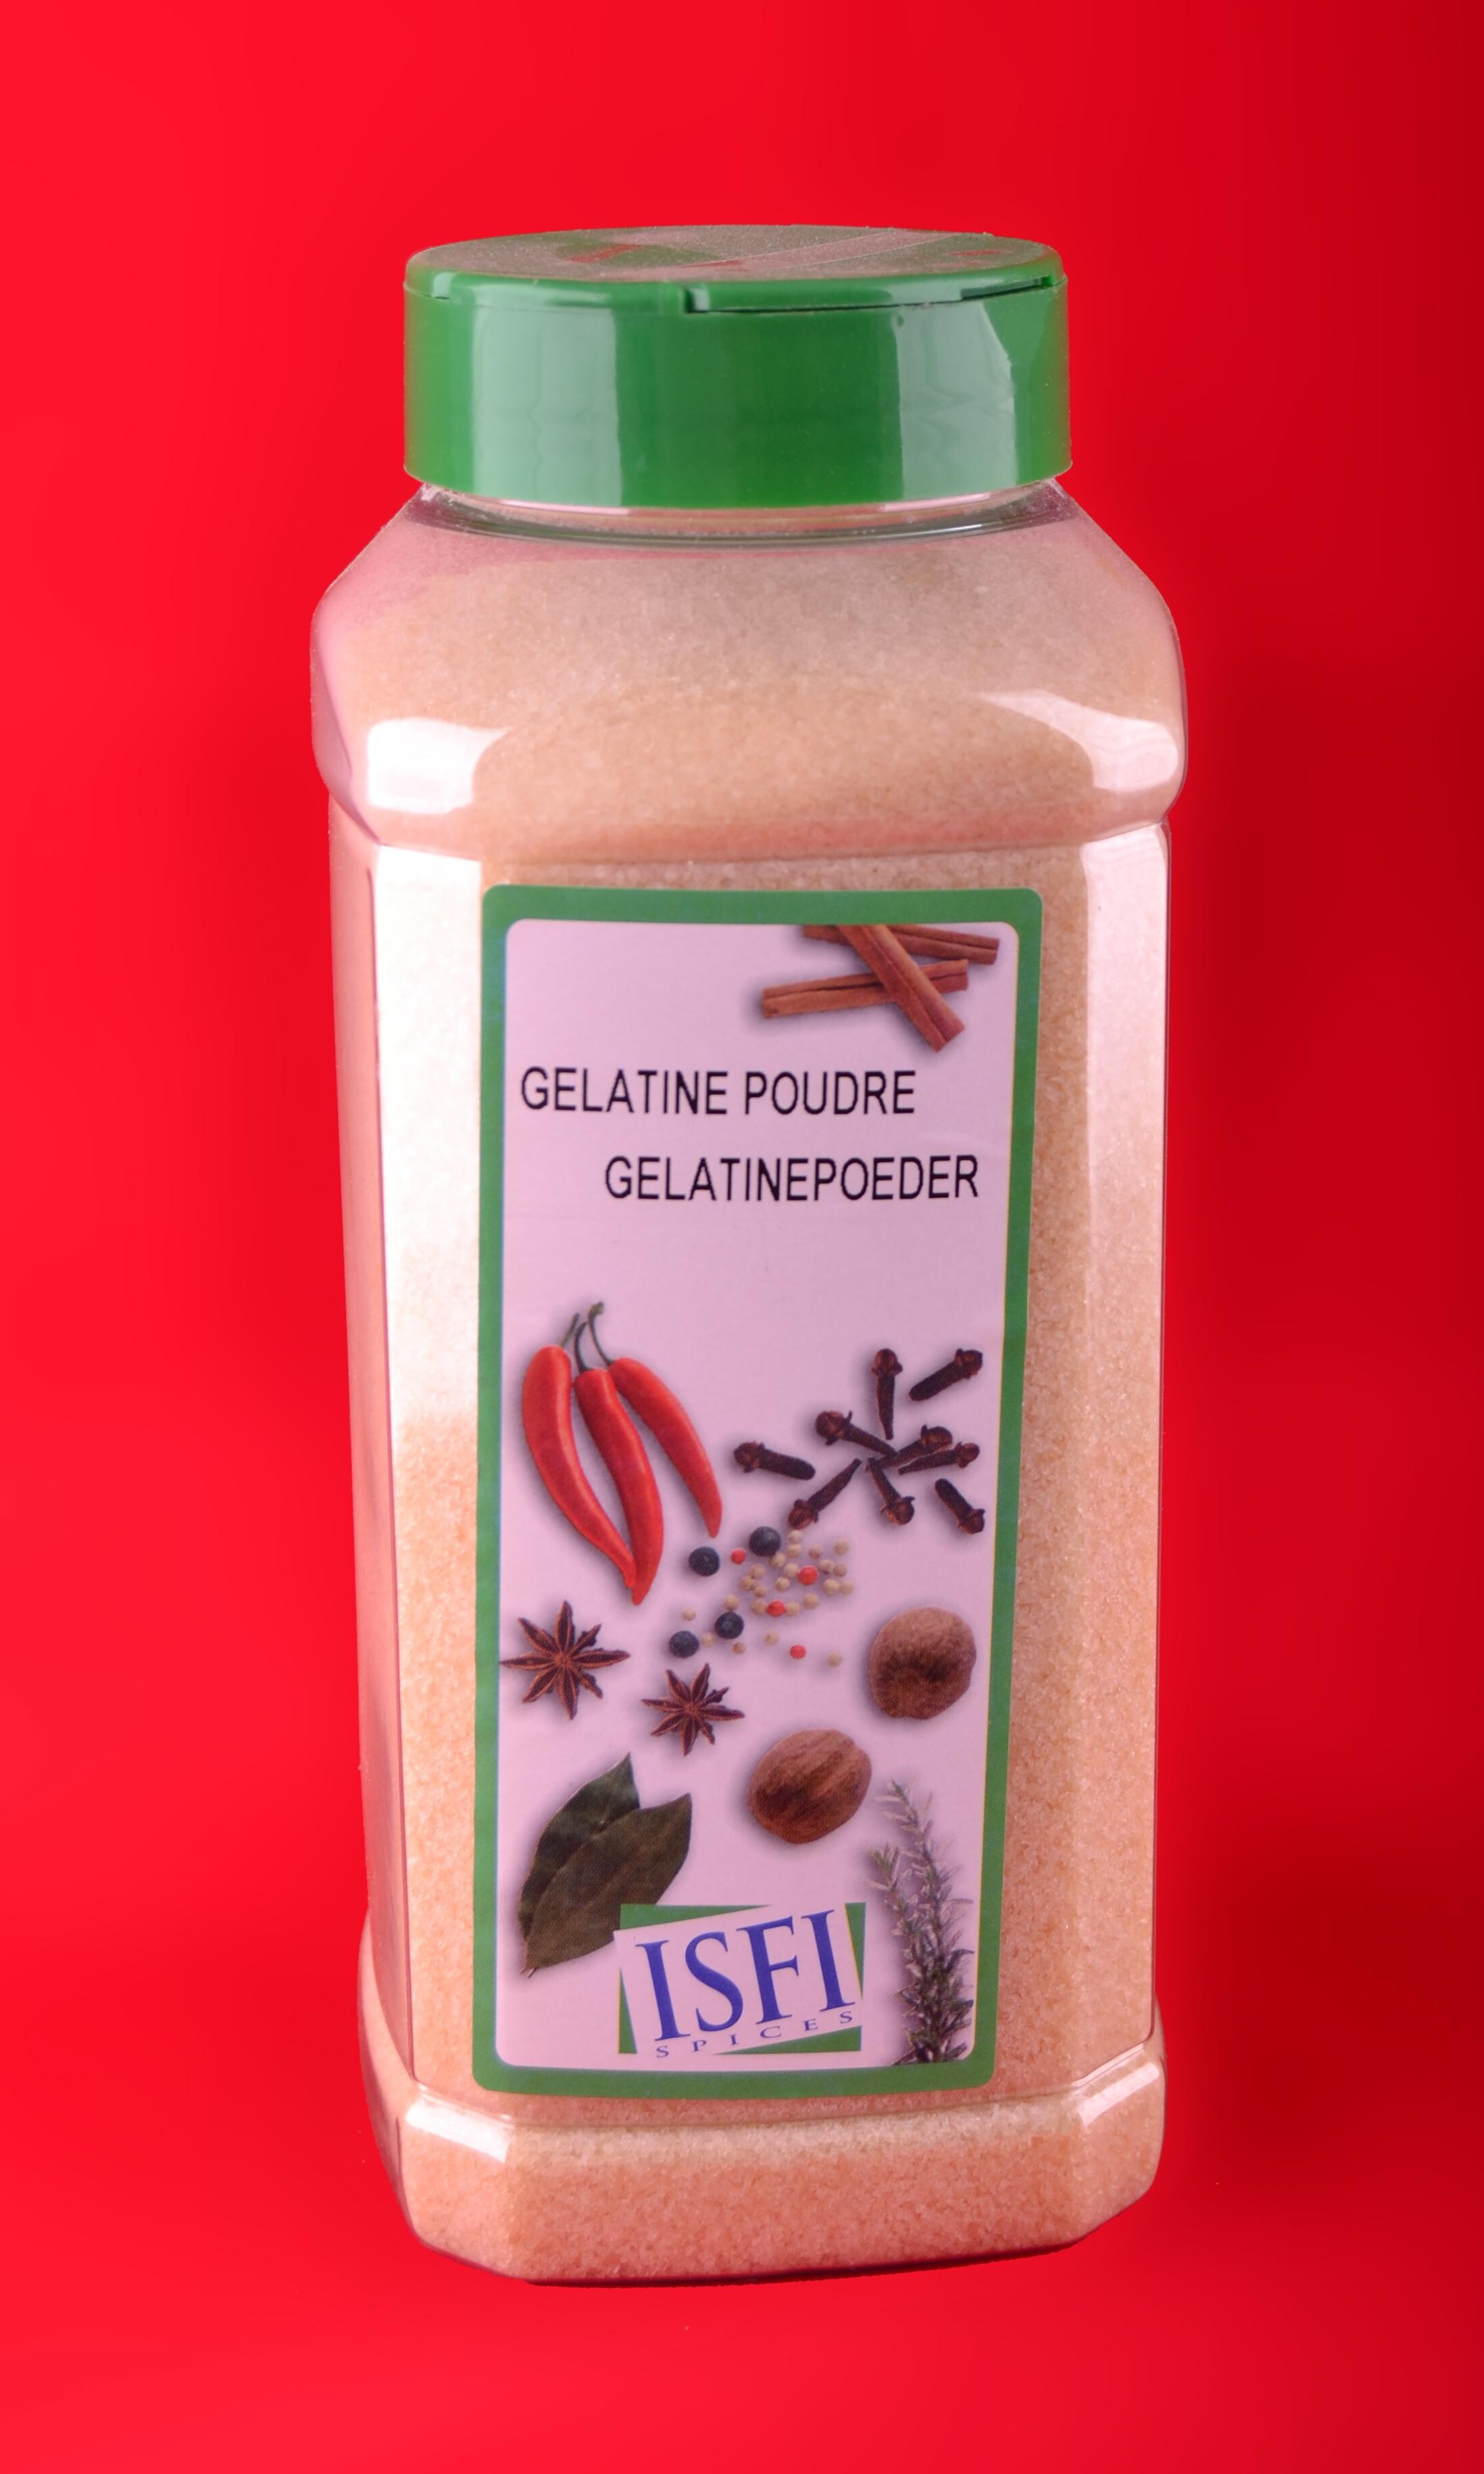 Gelatin Powder Nº1 650gr Pet Jar Isfi Spices